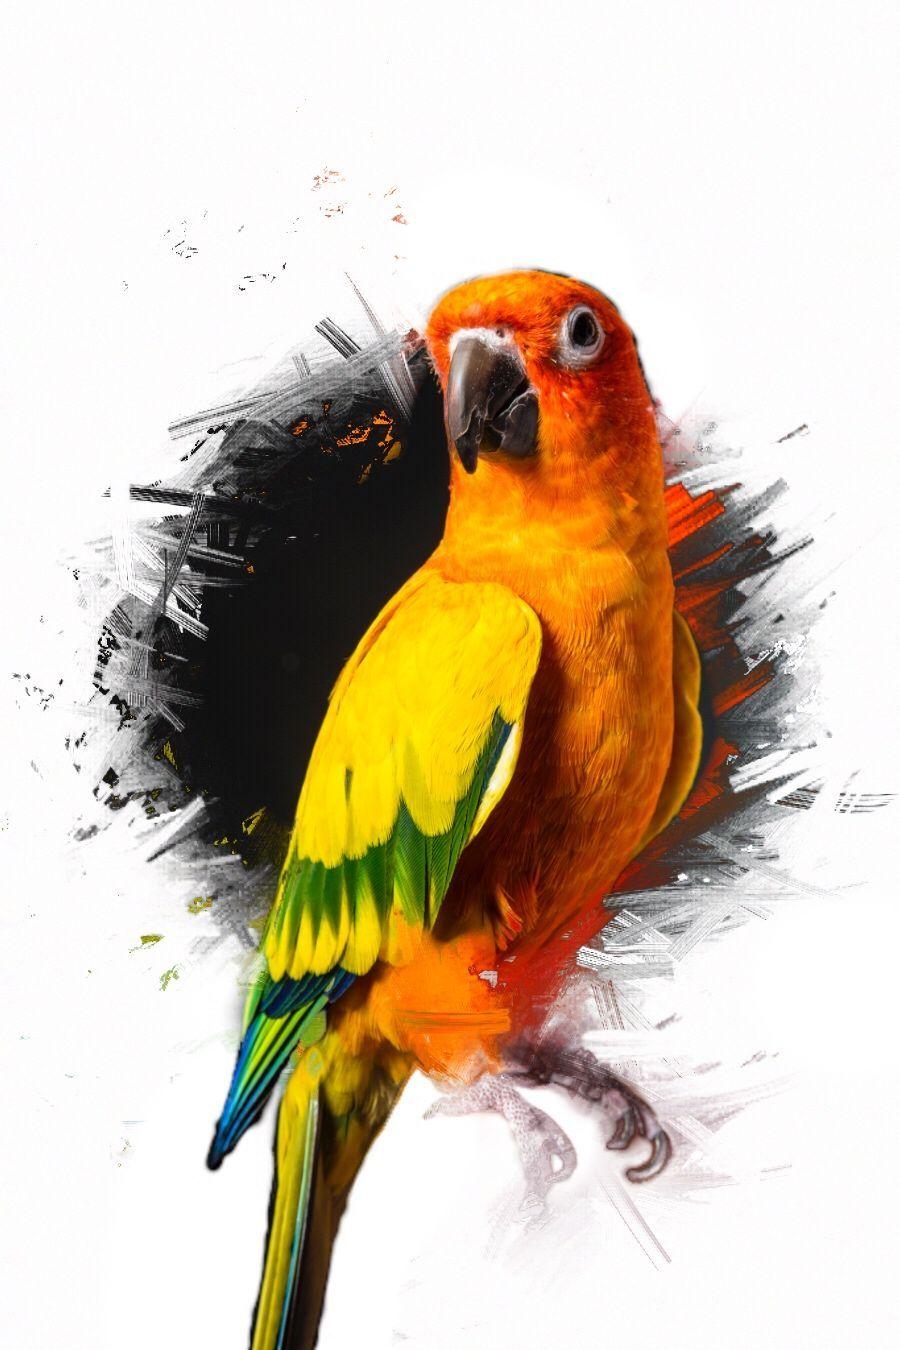 From Logan Paul Maverick Logo - Maverick the parrot | ramdom | Logan paul, Logan, Maverick logan paul